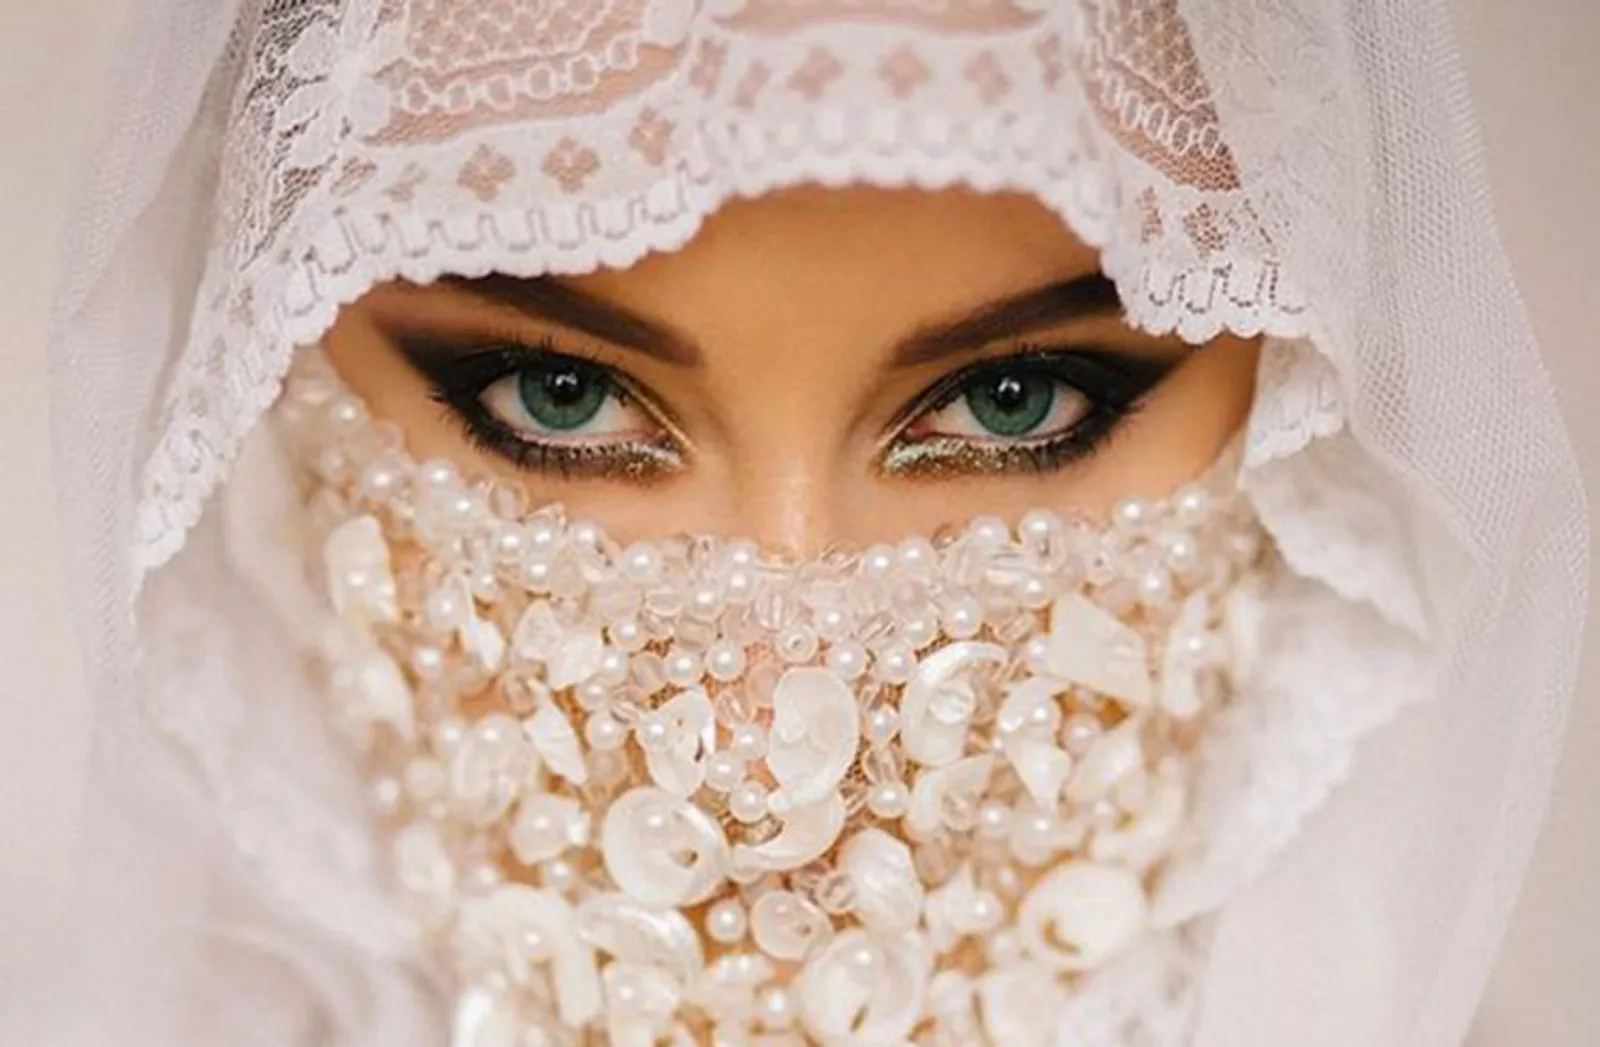 Wajib Tahu! Inilah 7 Fakta Unik Menggelar Pernikahan dengan Gaya Syar'i